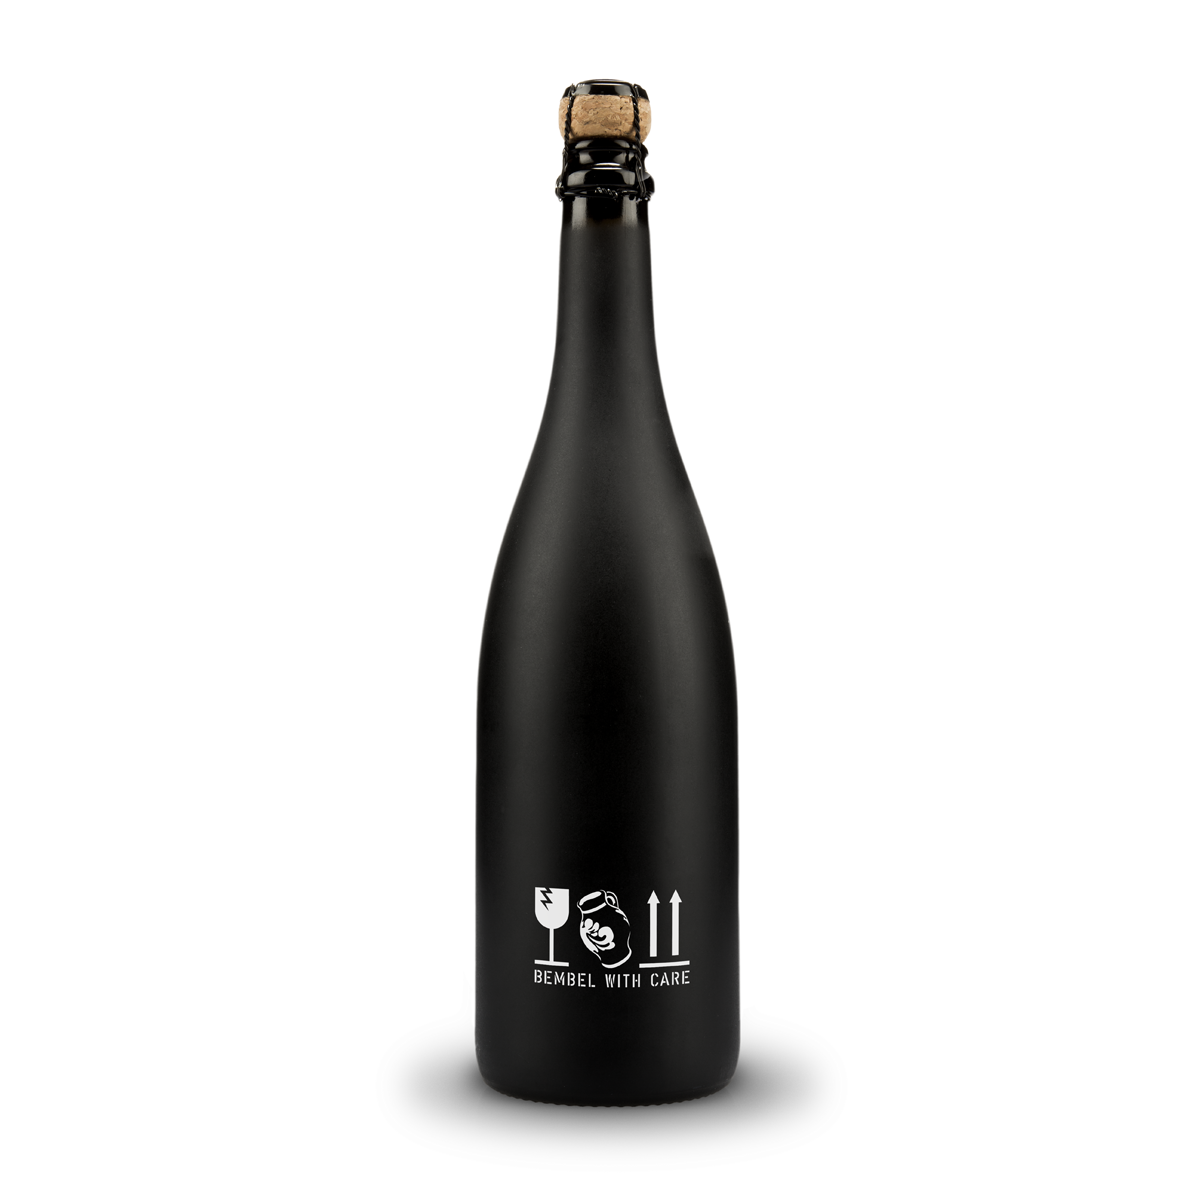 BEMBEL-WITH-CARE Apfelschaumwein (0,75L), Cider-Apfelsekt, Frontansicht schwarze Glasflasche